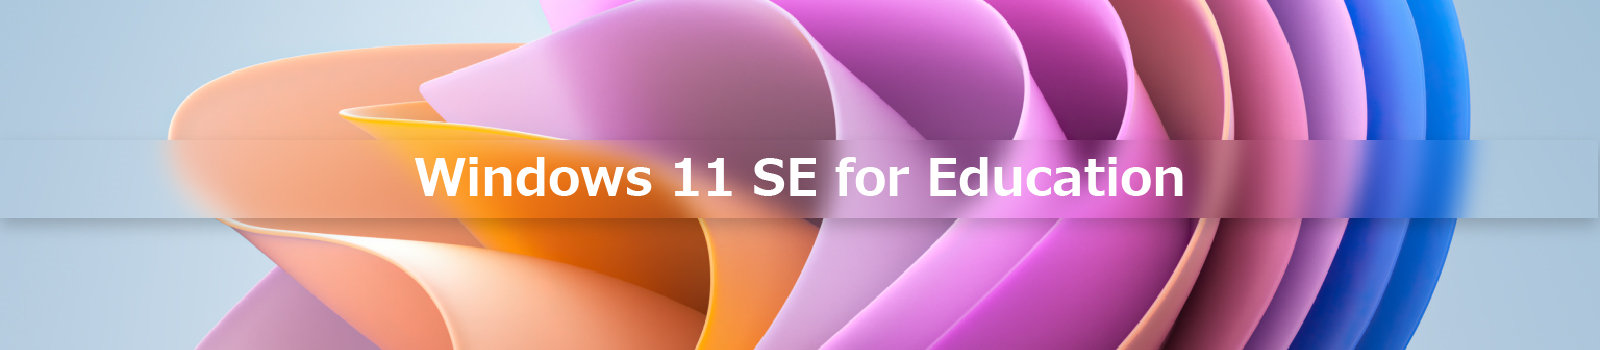 Windows 11 SE for Educationのイメージ